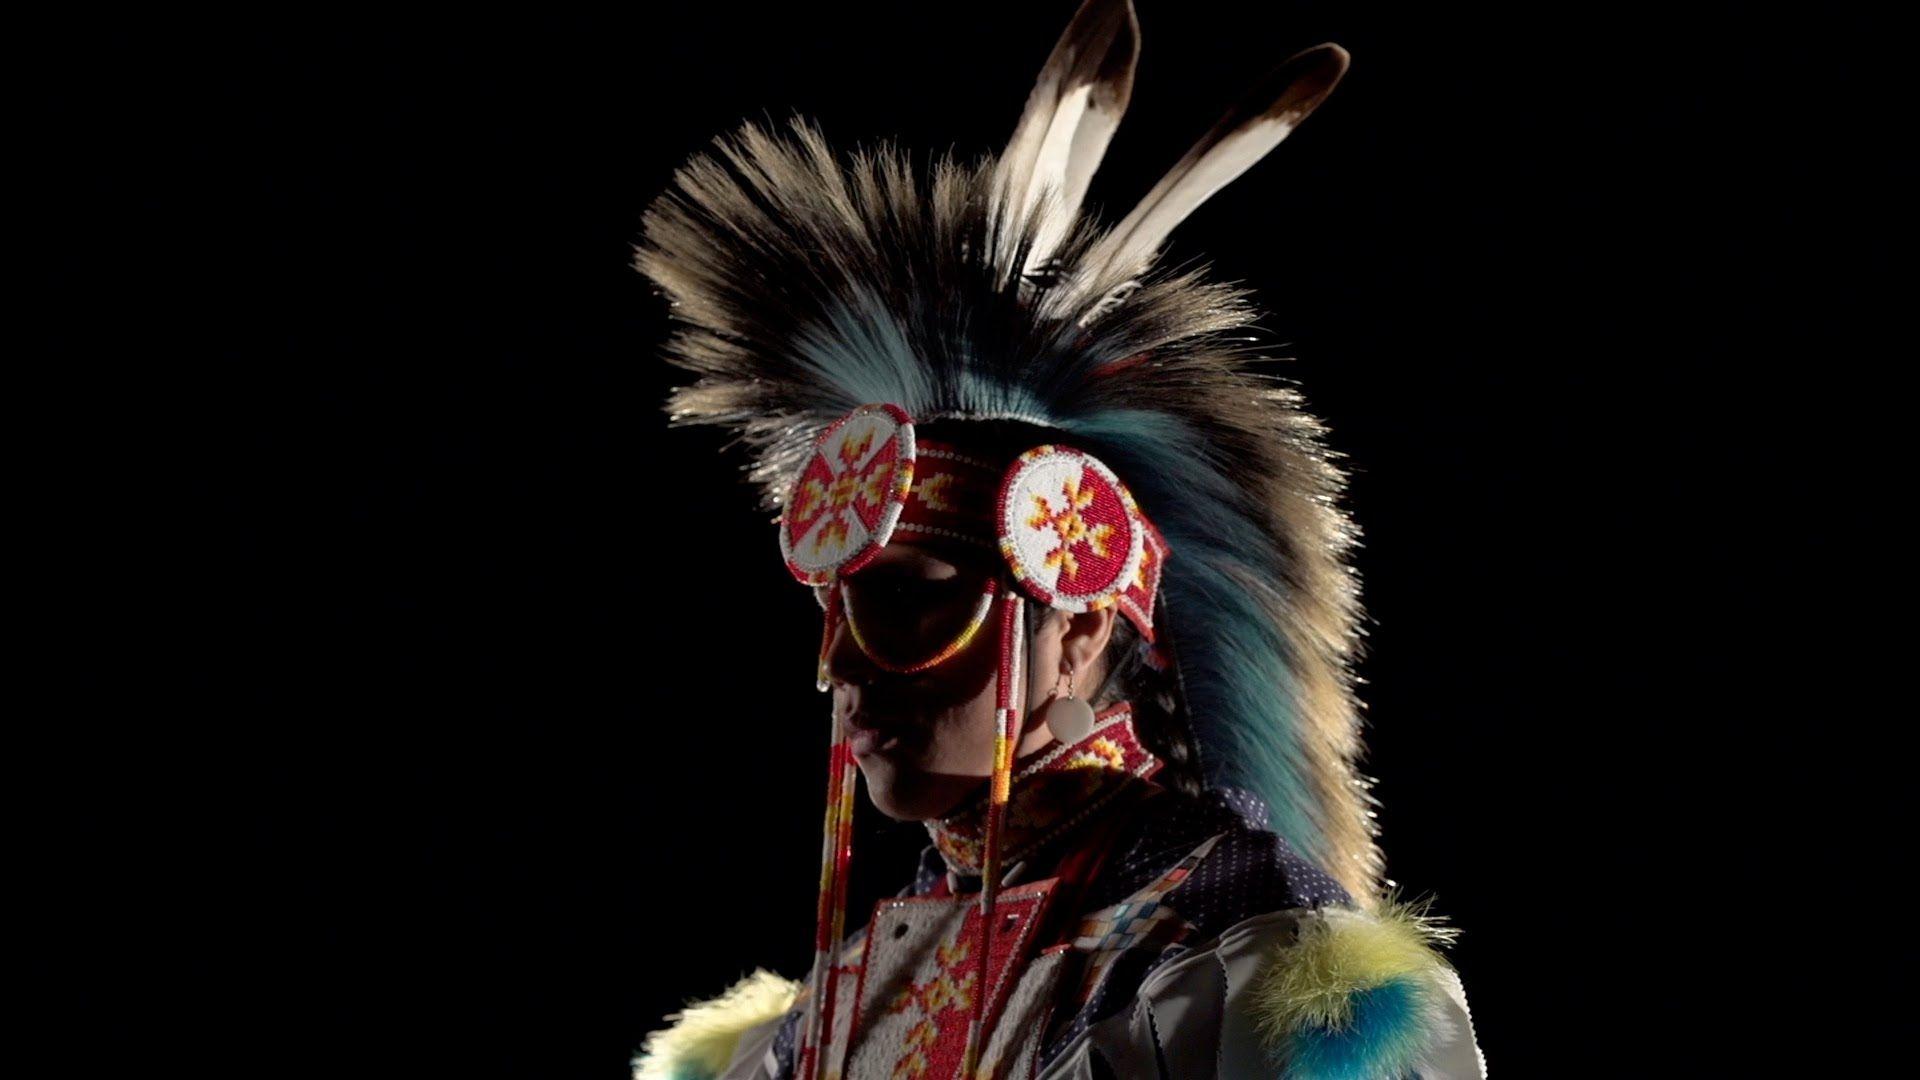 Native American Dancing Wallpaper Free Native American